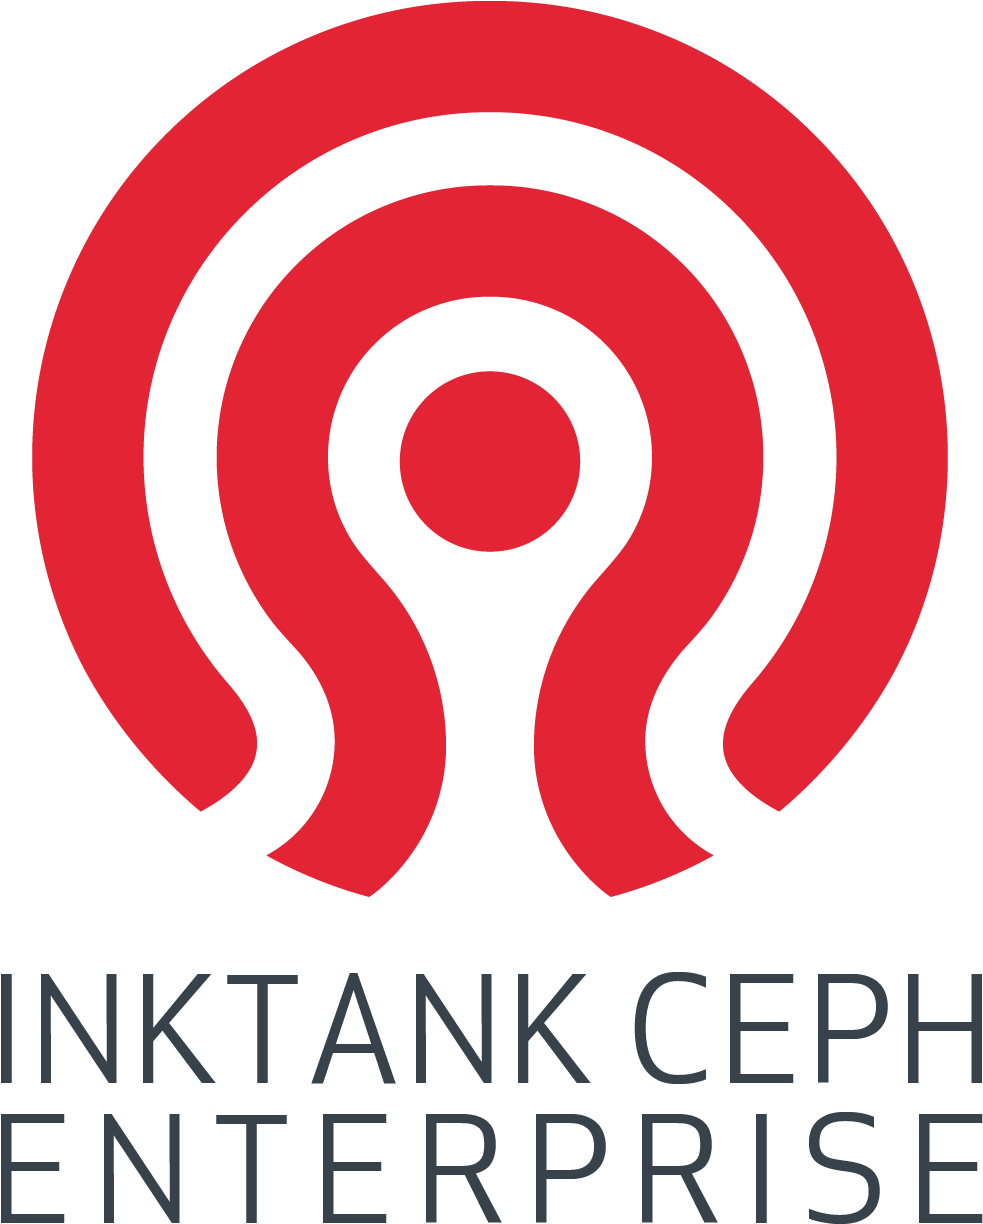 Inktank Ceph Enterprise Logo - Canberra Convention Bureau (1024x1260), Png Download